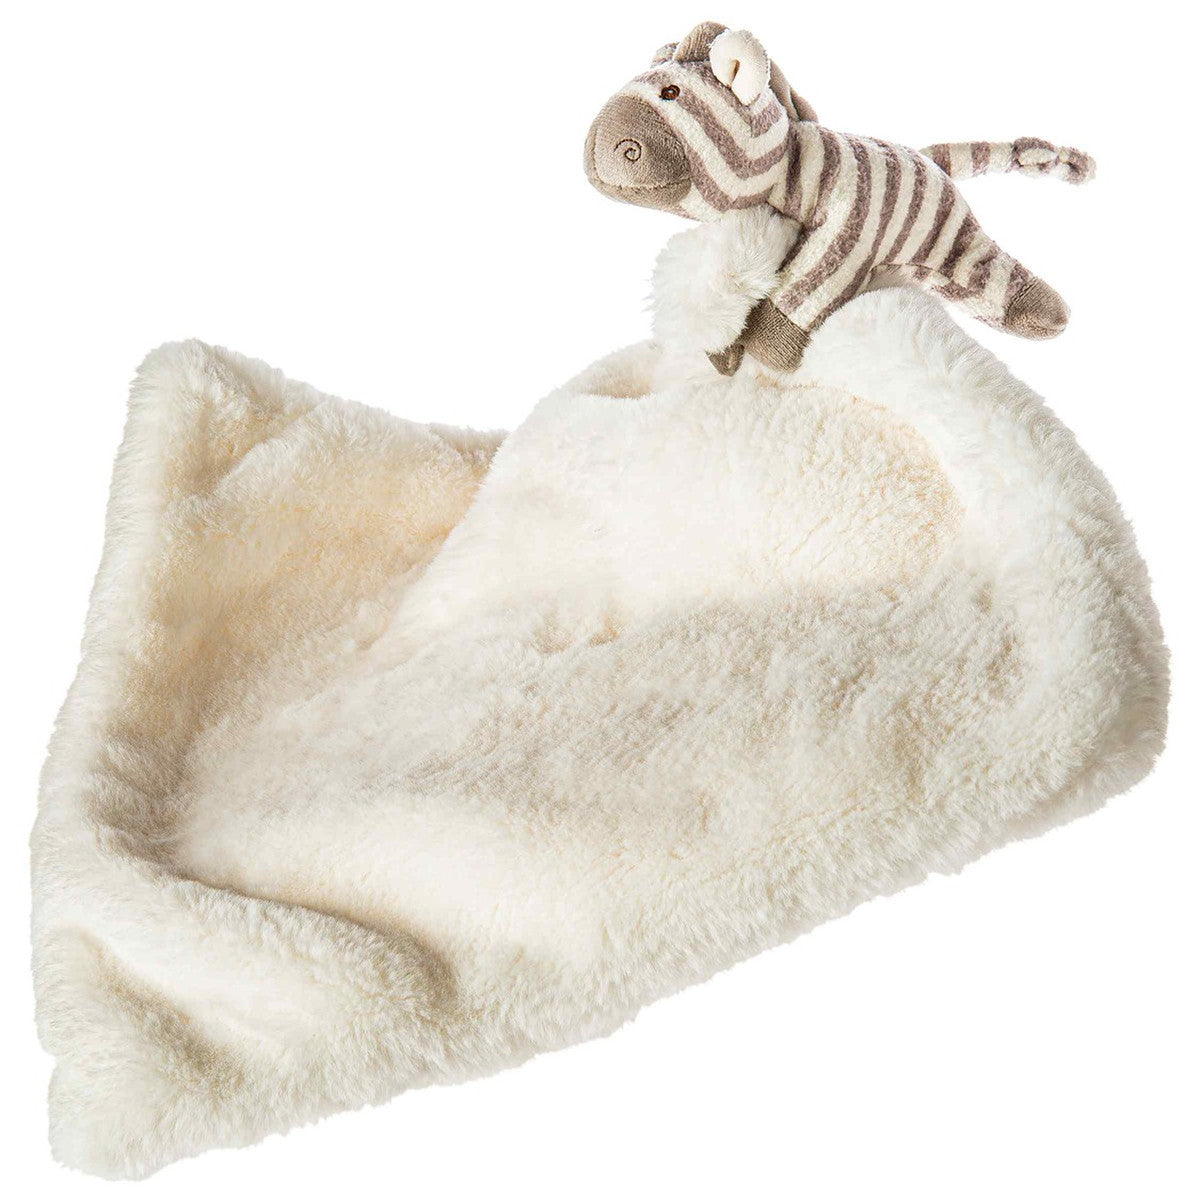 Afrique Zebra Huggy Blanket - Twinkle Twinkle Little One